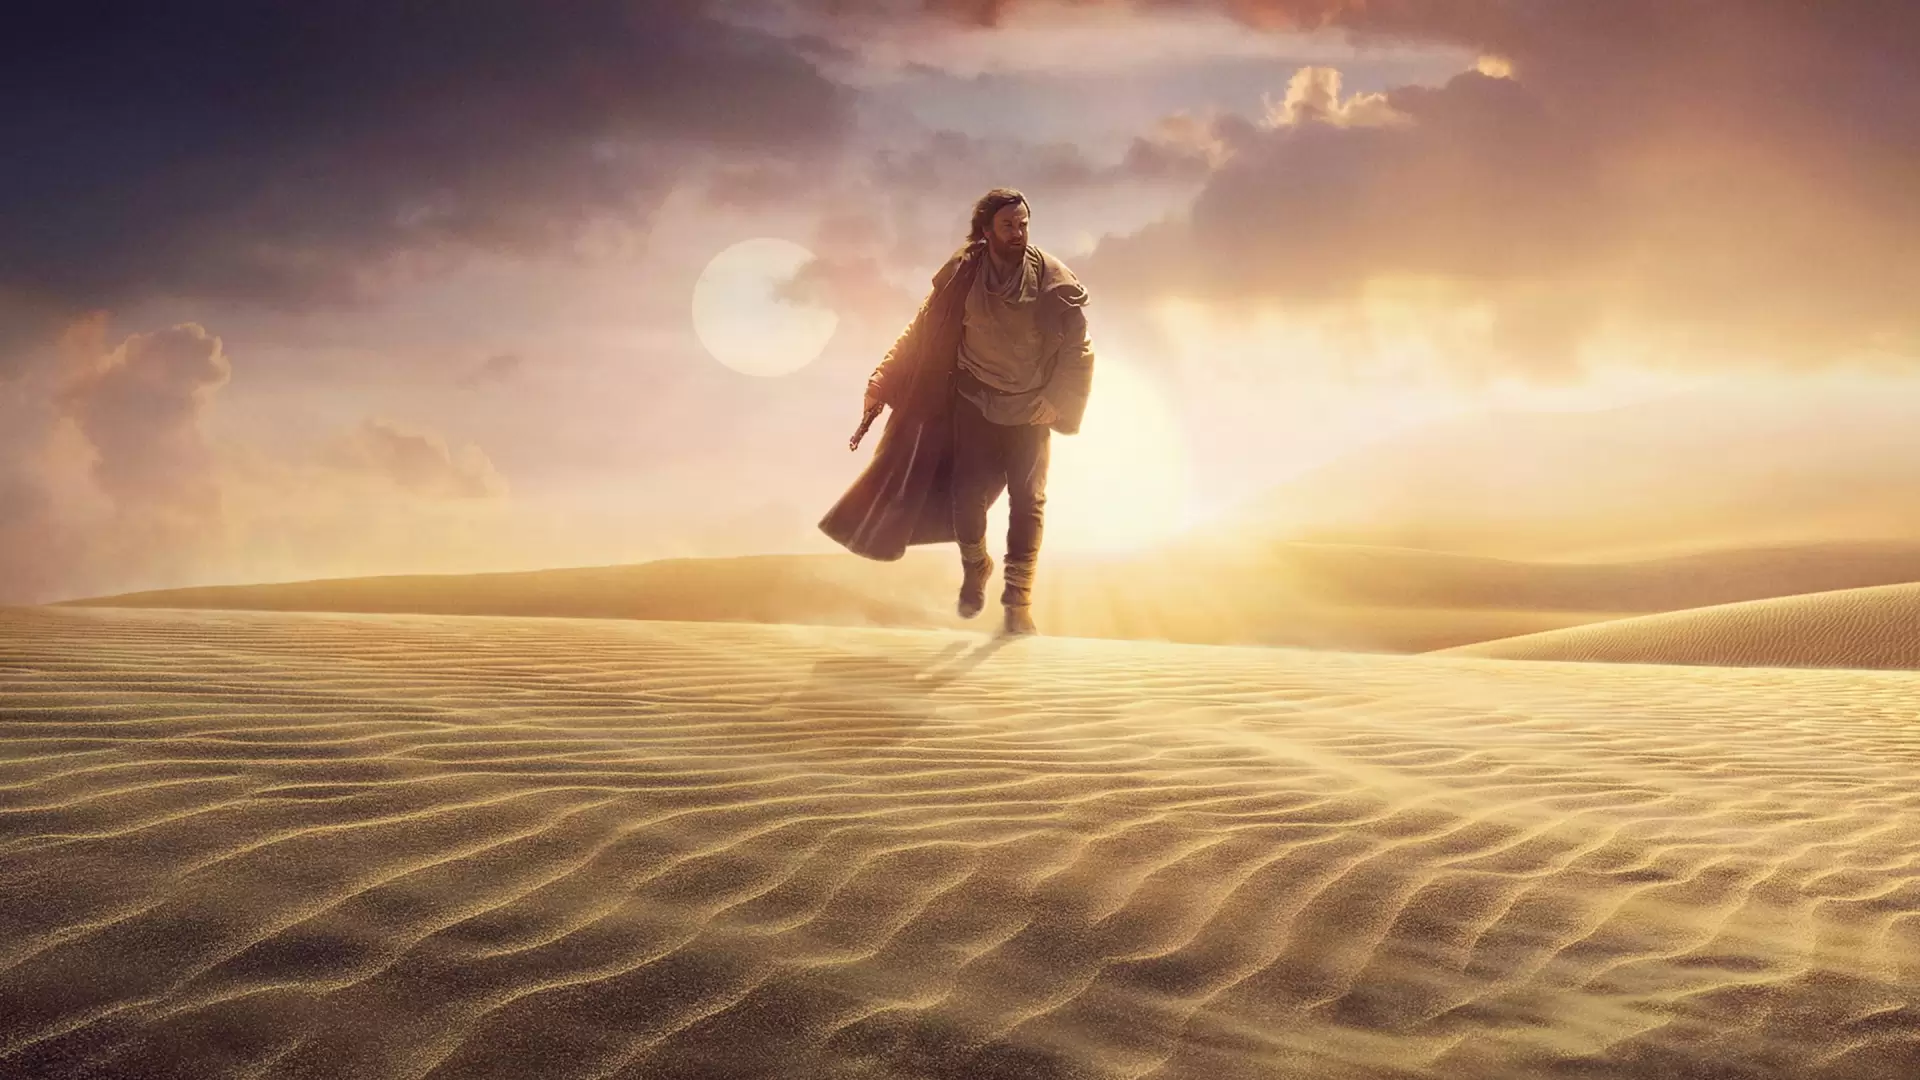 دانلود مینی سریال Obi-Wan Kenobi 2022 (اوبی-وان کنوبی) با زیرنویس فارسی و تماشای آنلاین